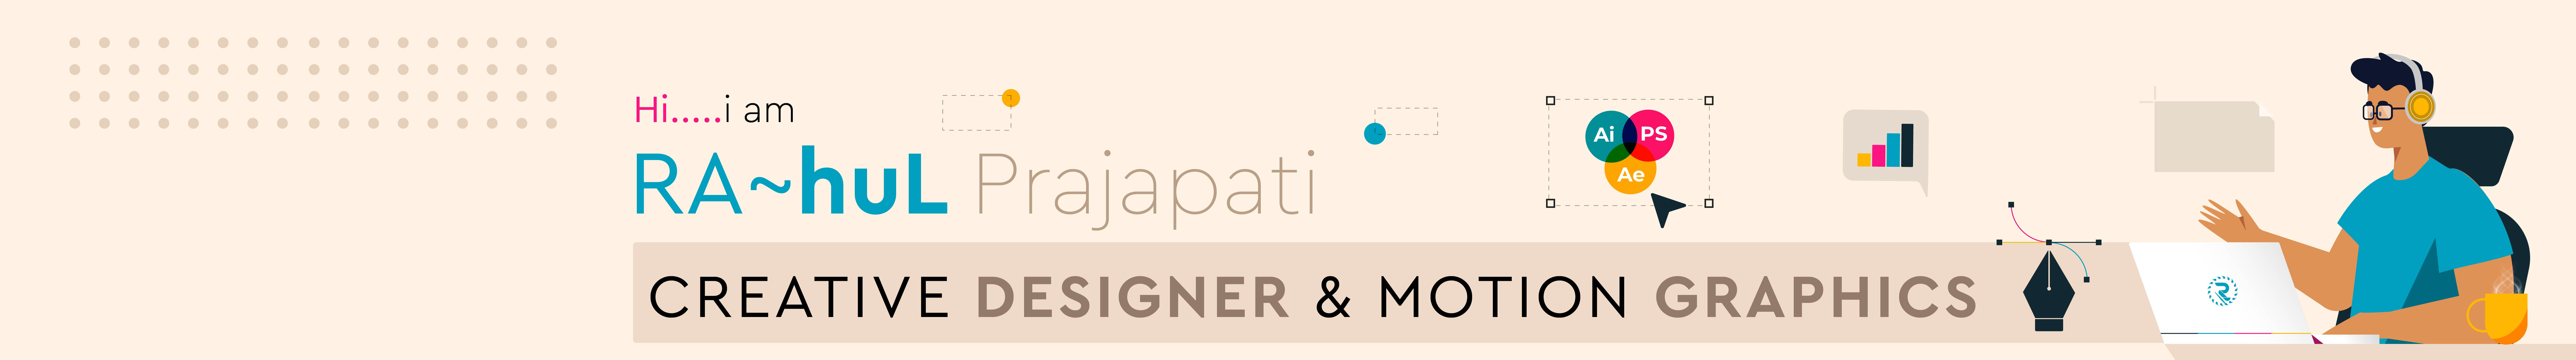 RA~huL Prajapati's profile banner